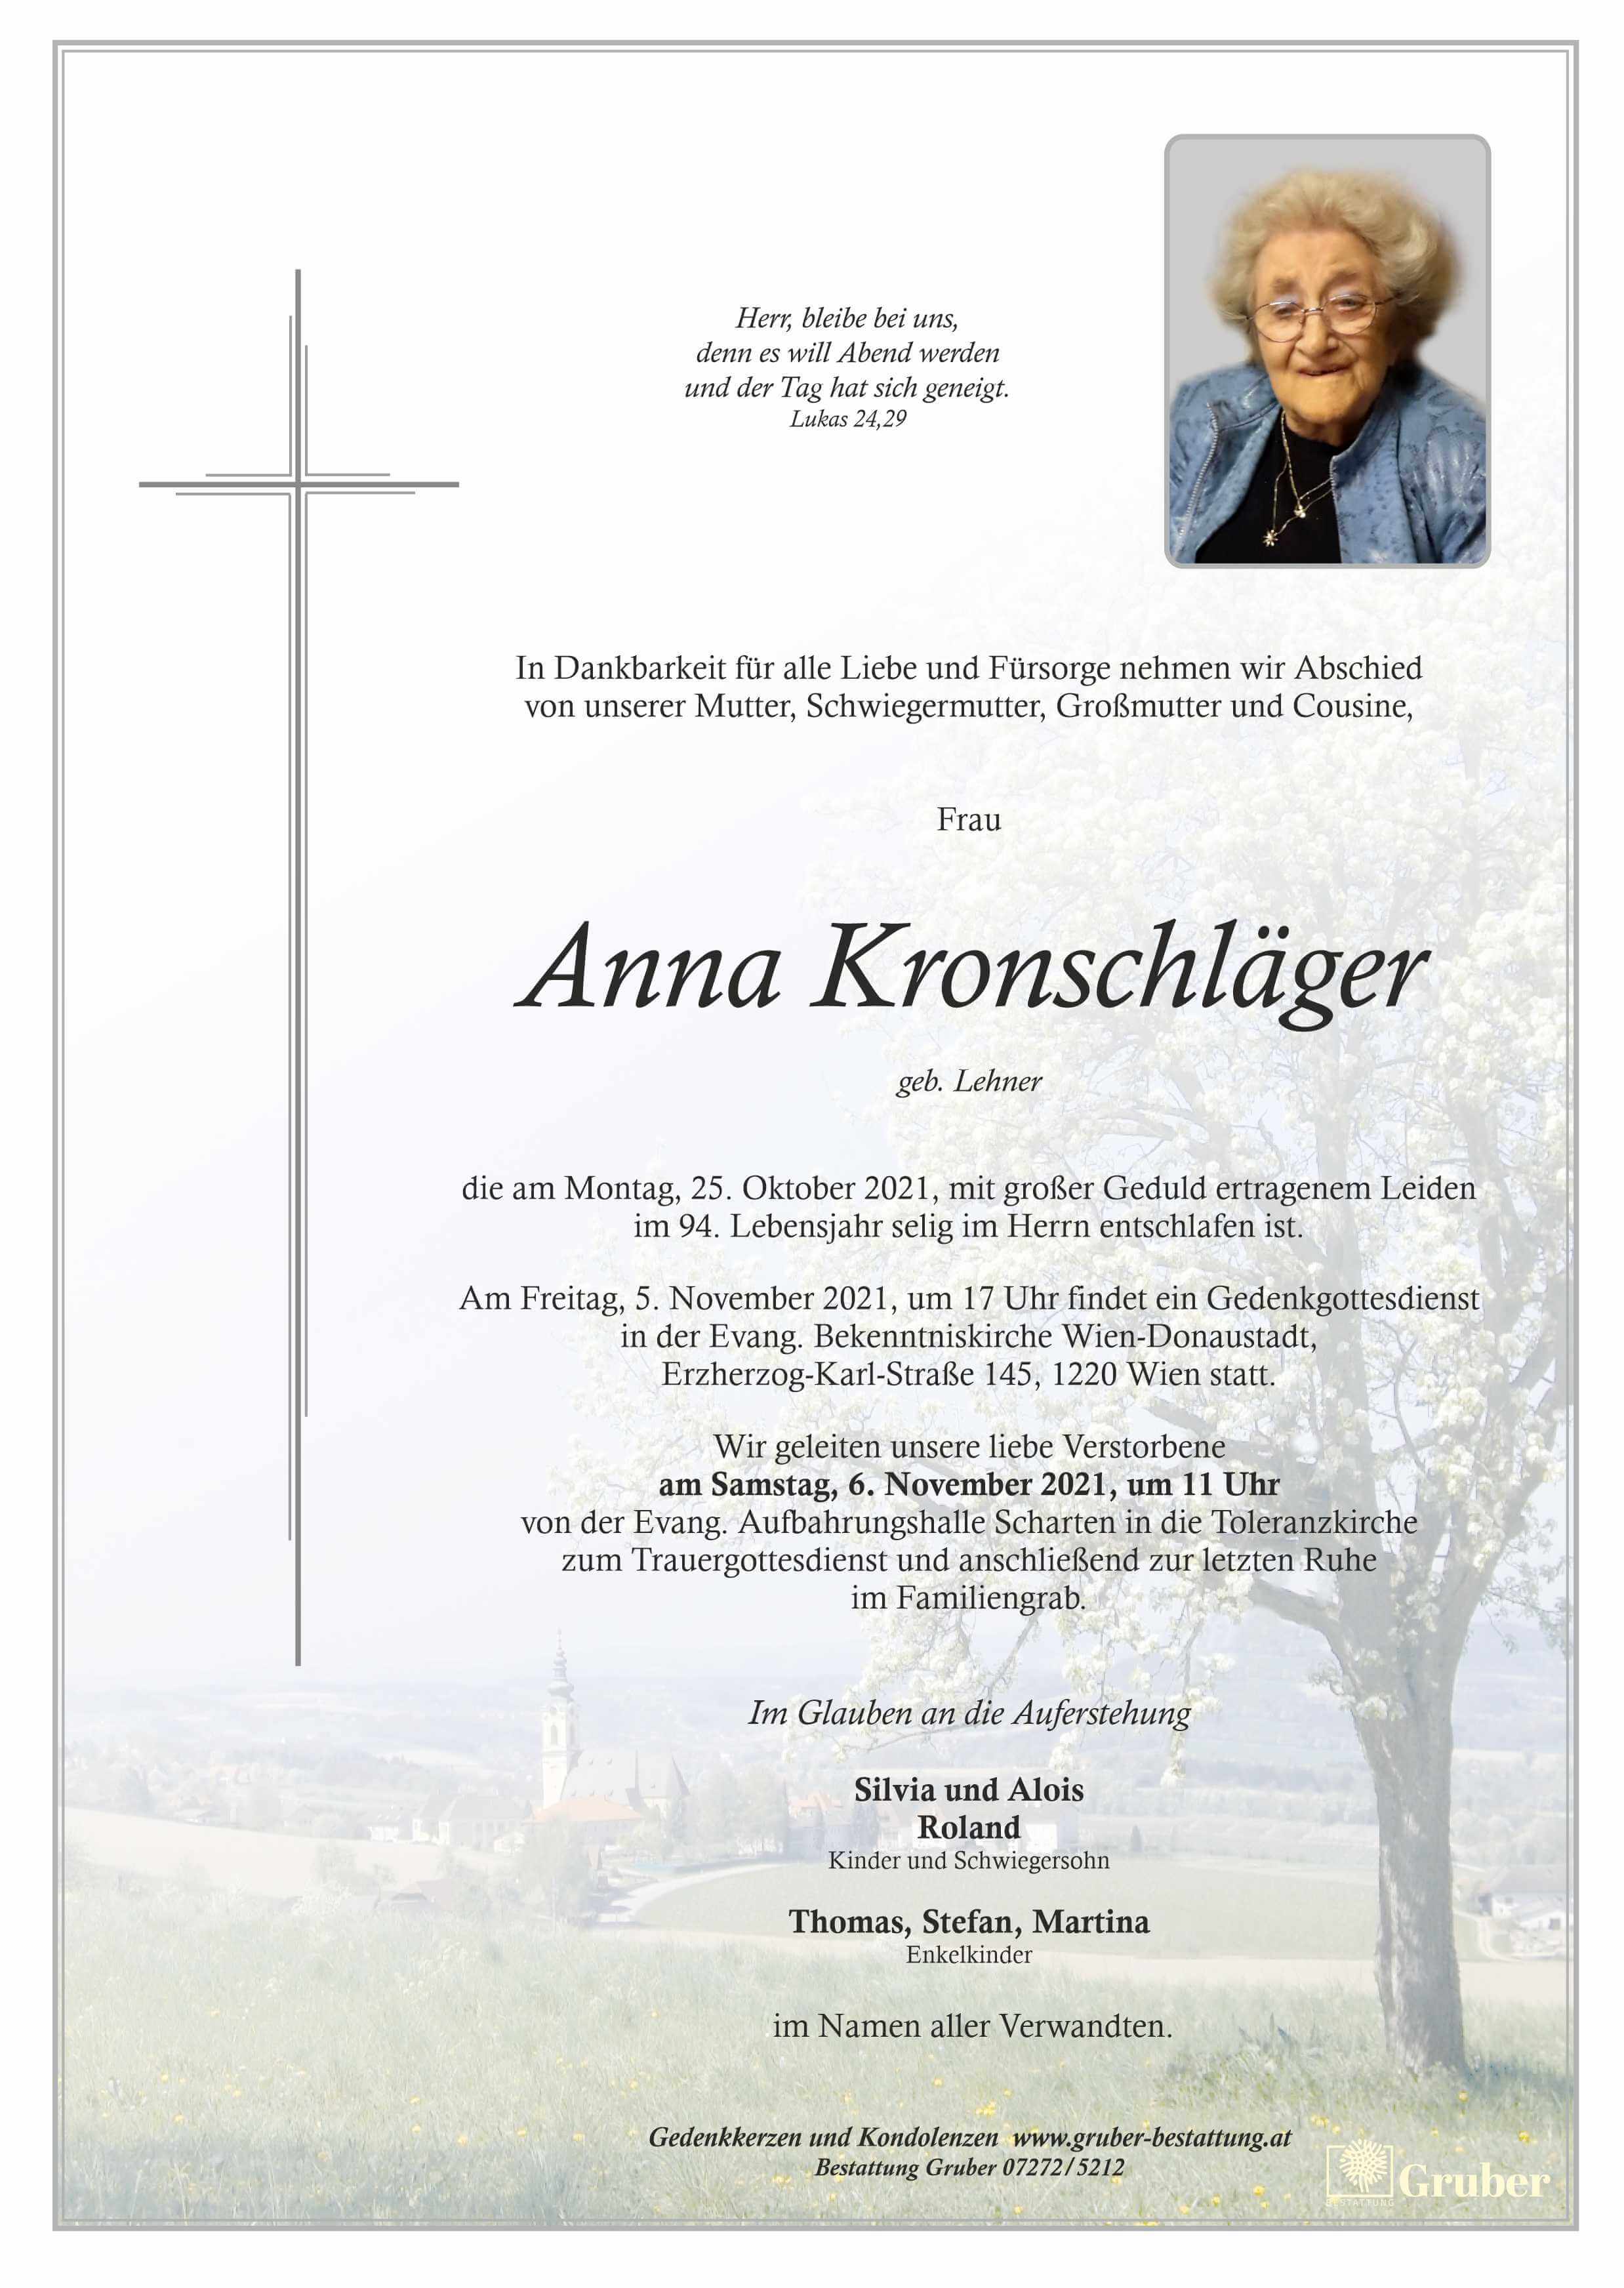 Anna Kronschläger (Wien)